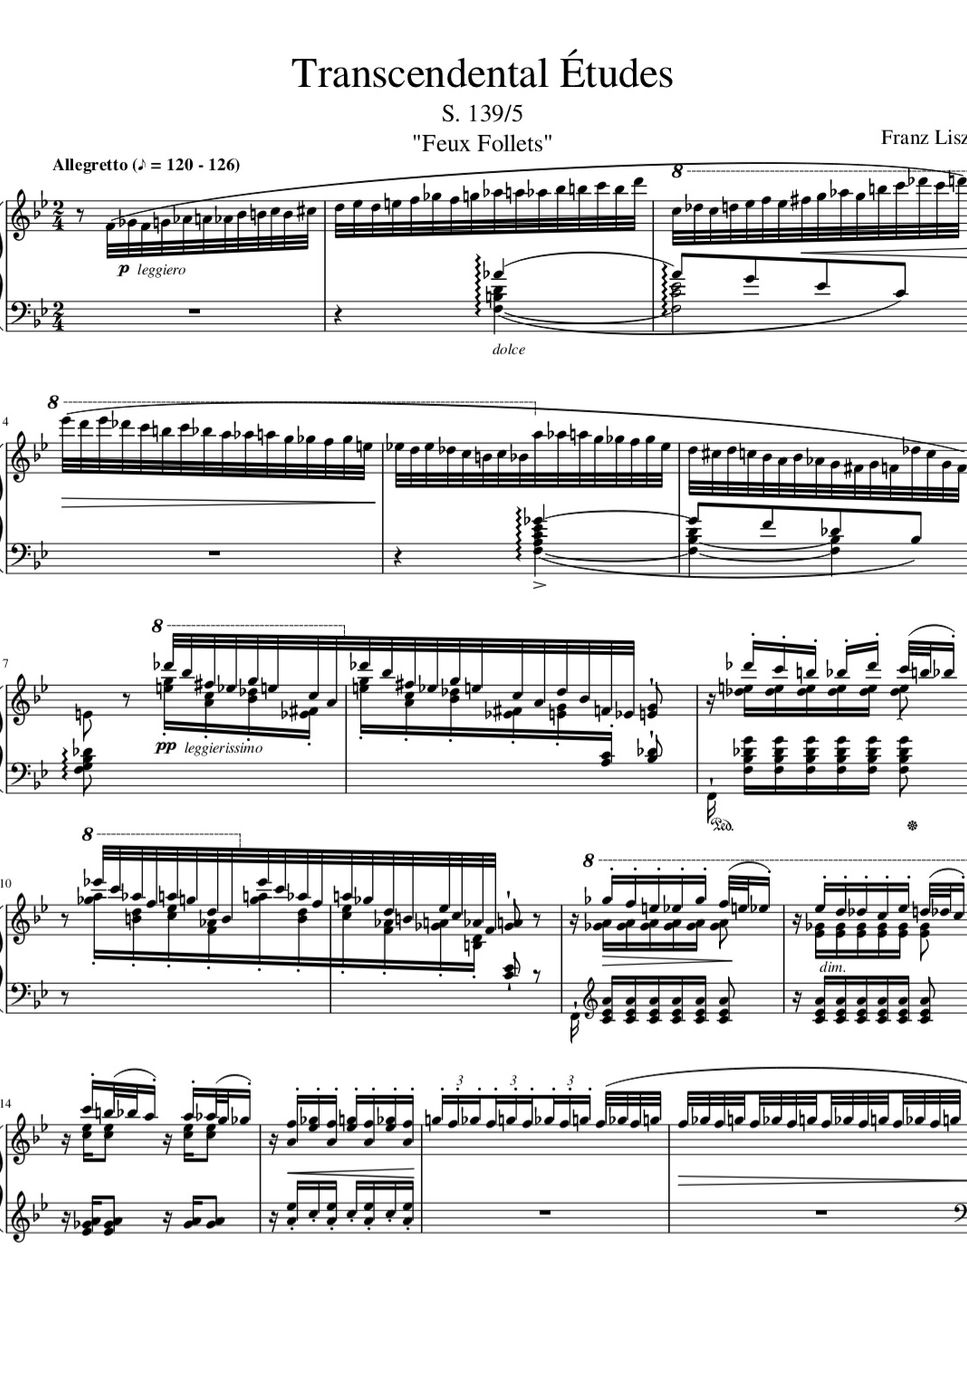 Liszt - Liszt - Transcendental Etude "Feux Follets" (Sound source) by Fortepian